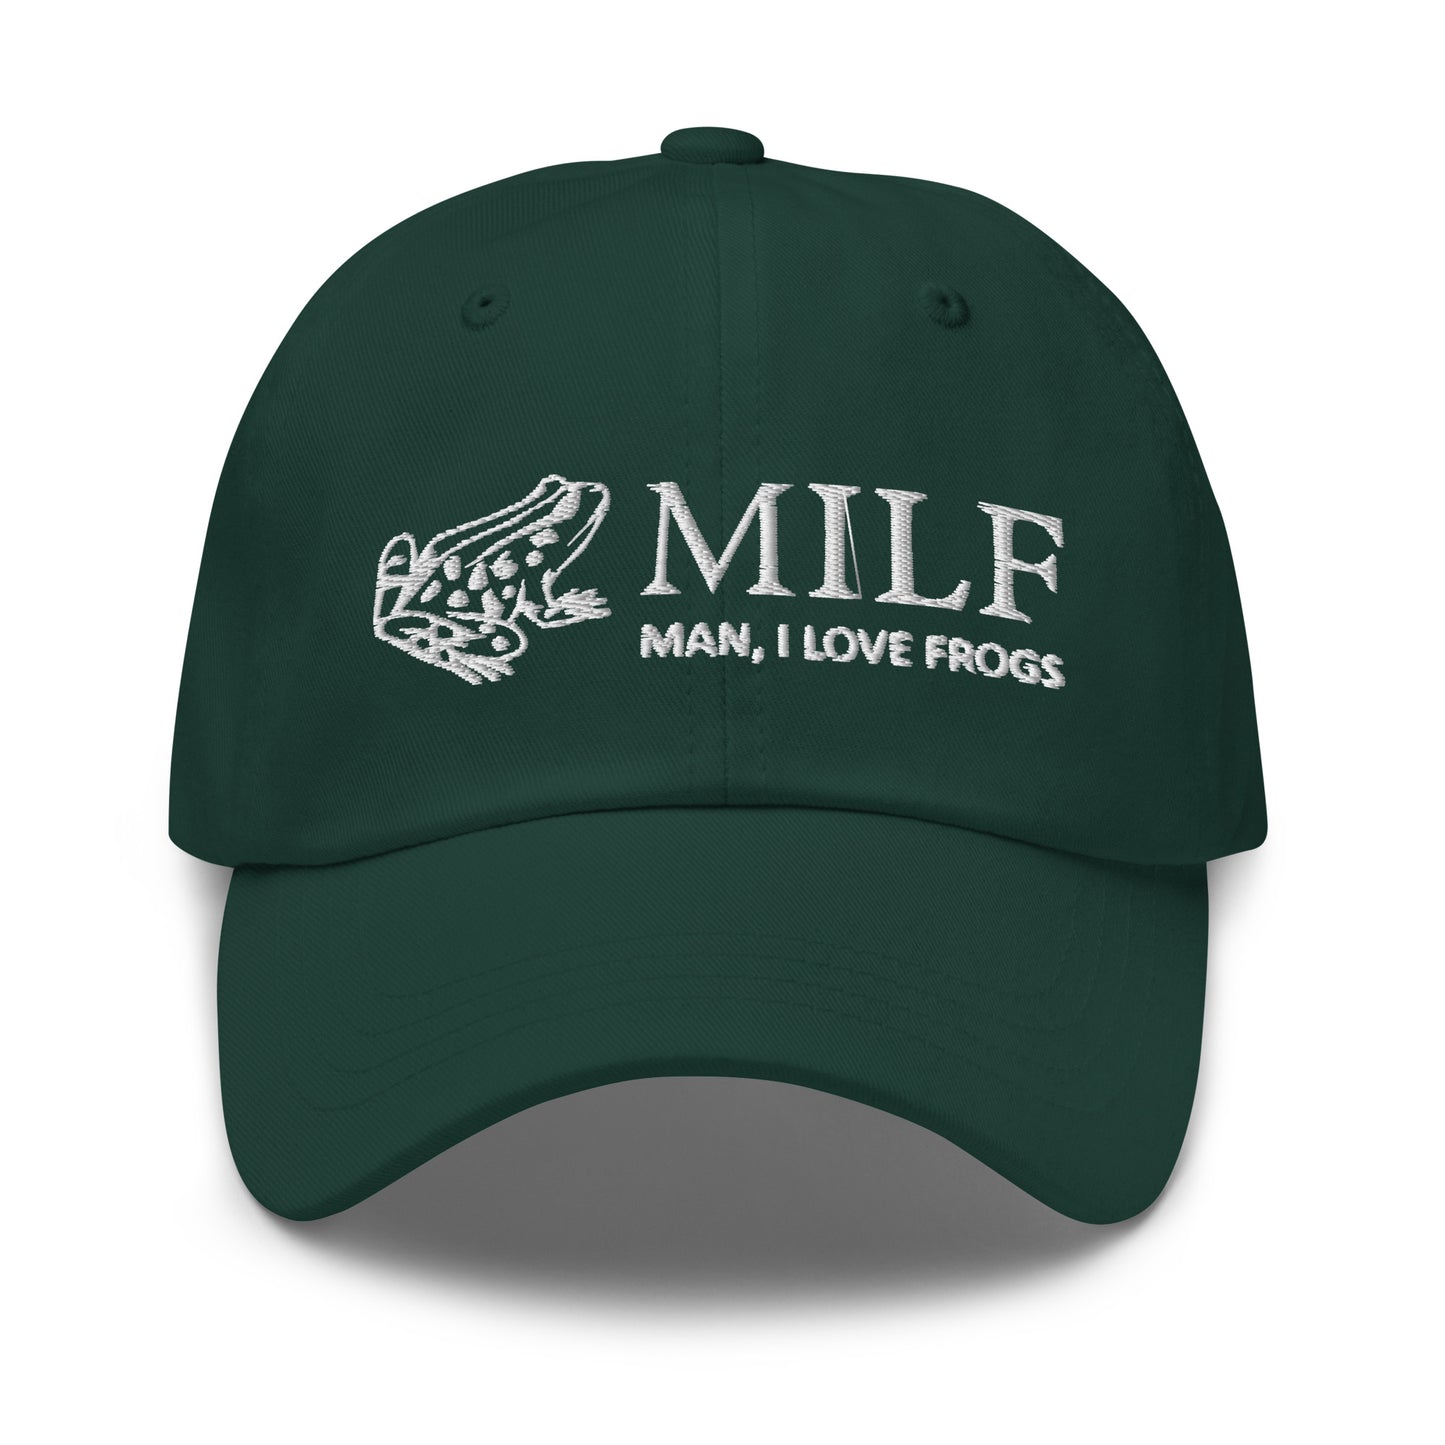 MILF (Man, I Love Frogs) hat